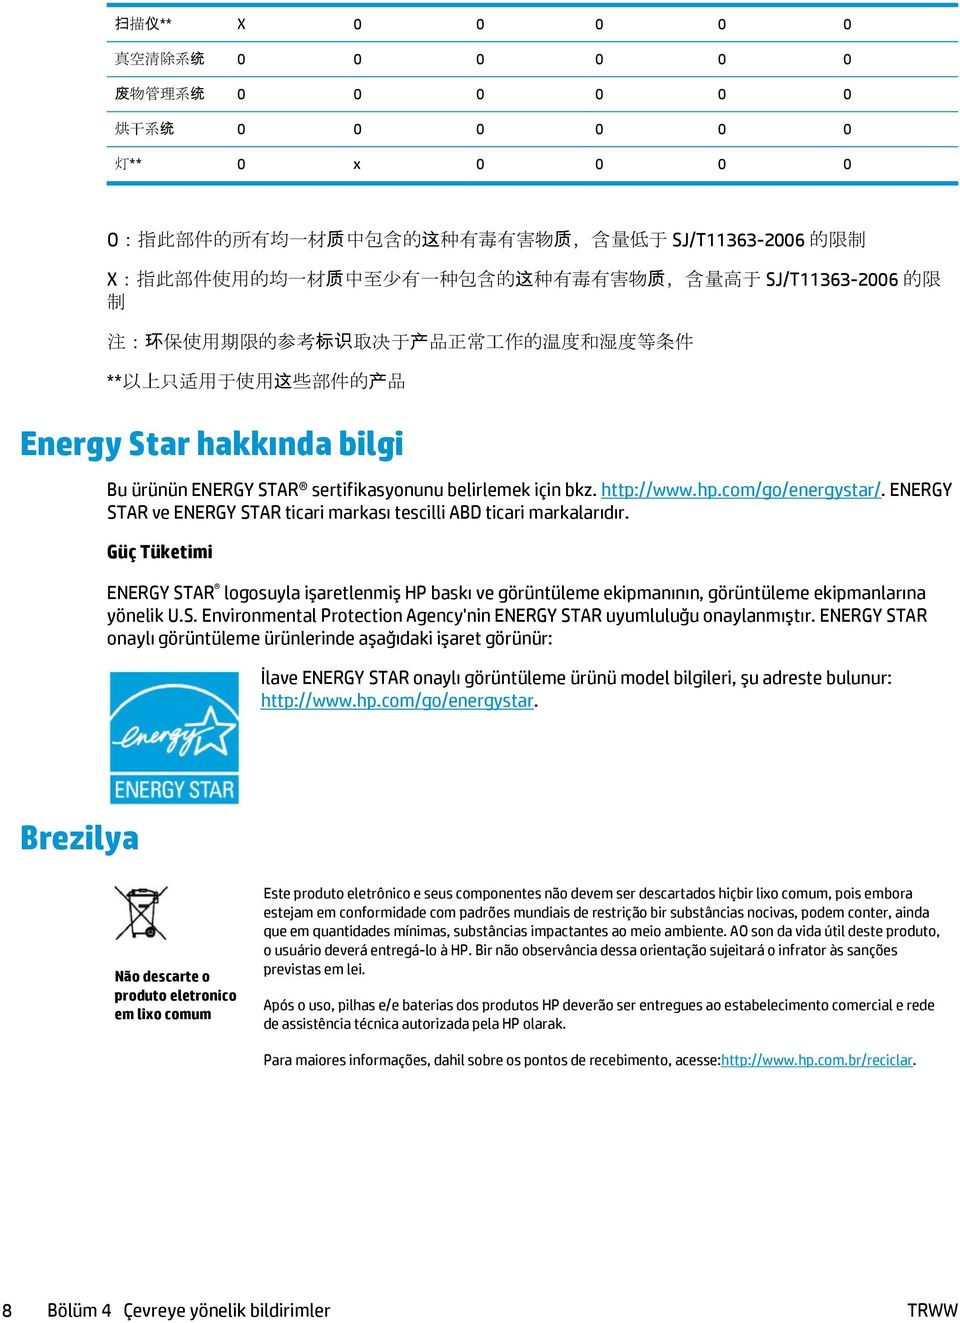 ürünün ENERGY STAR sertifikasyonunu belirlemek için bkz. http://www.hp.com/go/energystar/. ENERGY STAR ve ENERGY STAR ticari markası tescilli ABD ticari markalarıdır.